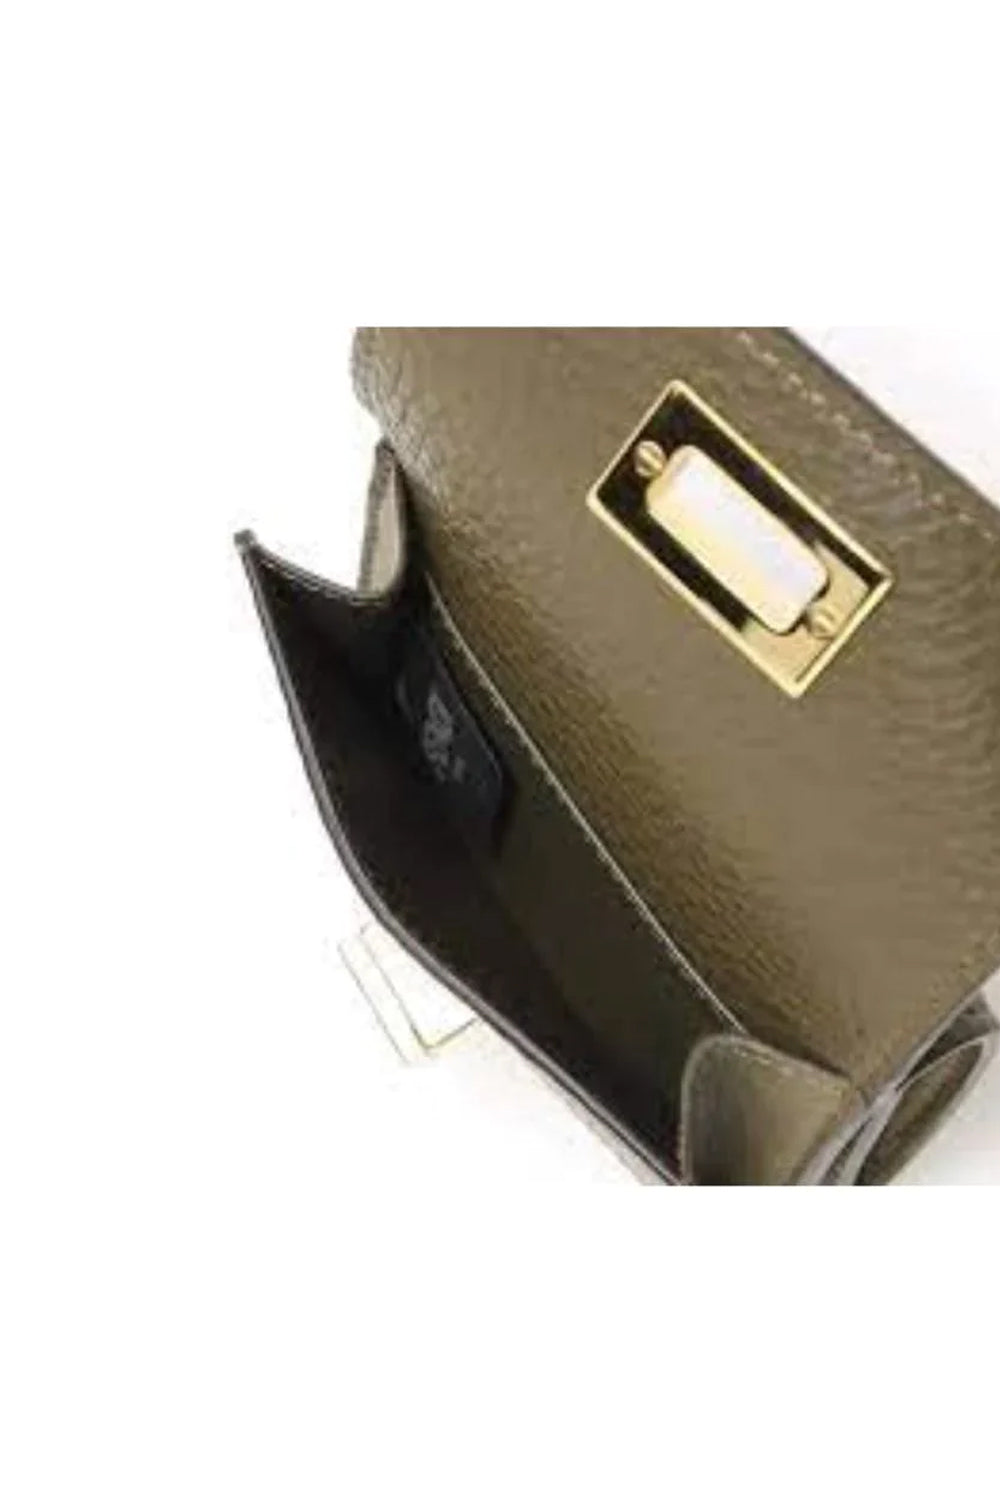 Fendi Selleria Leather Avocado Micro Trifold Wallet